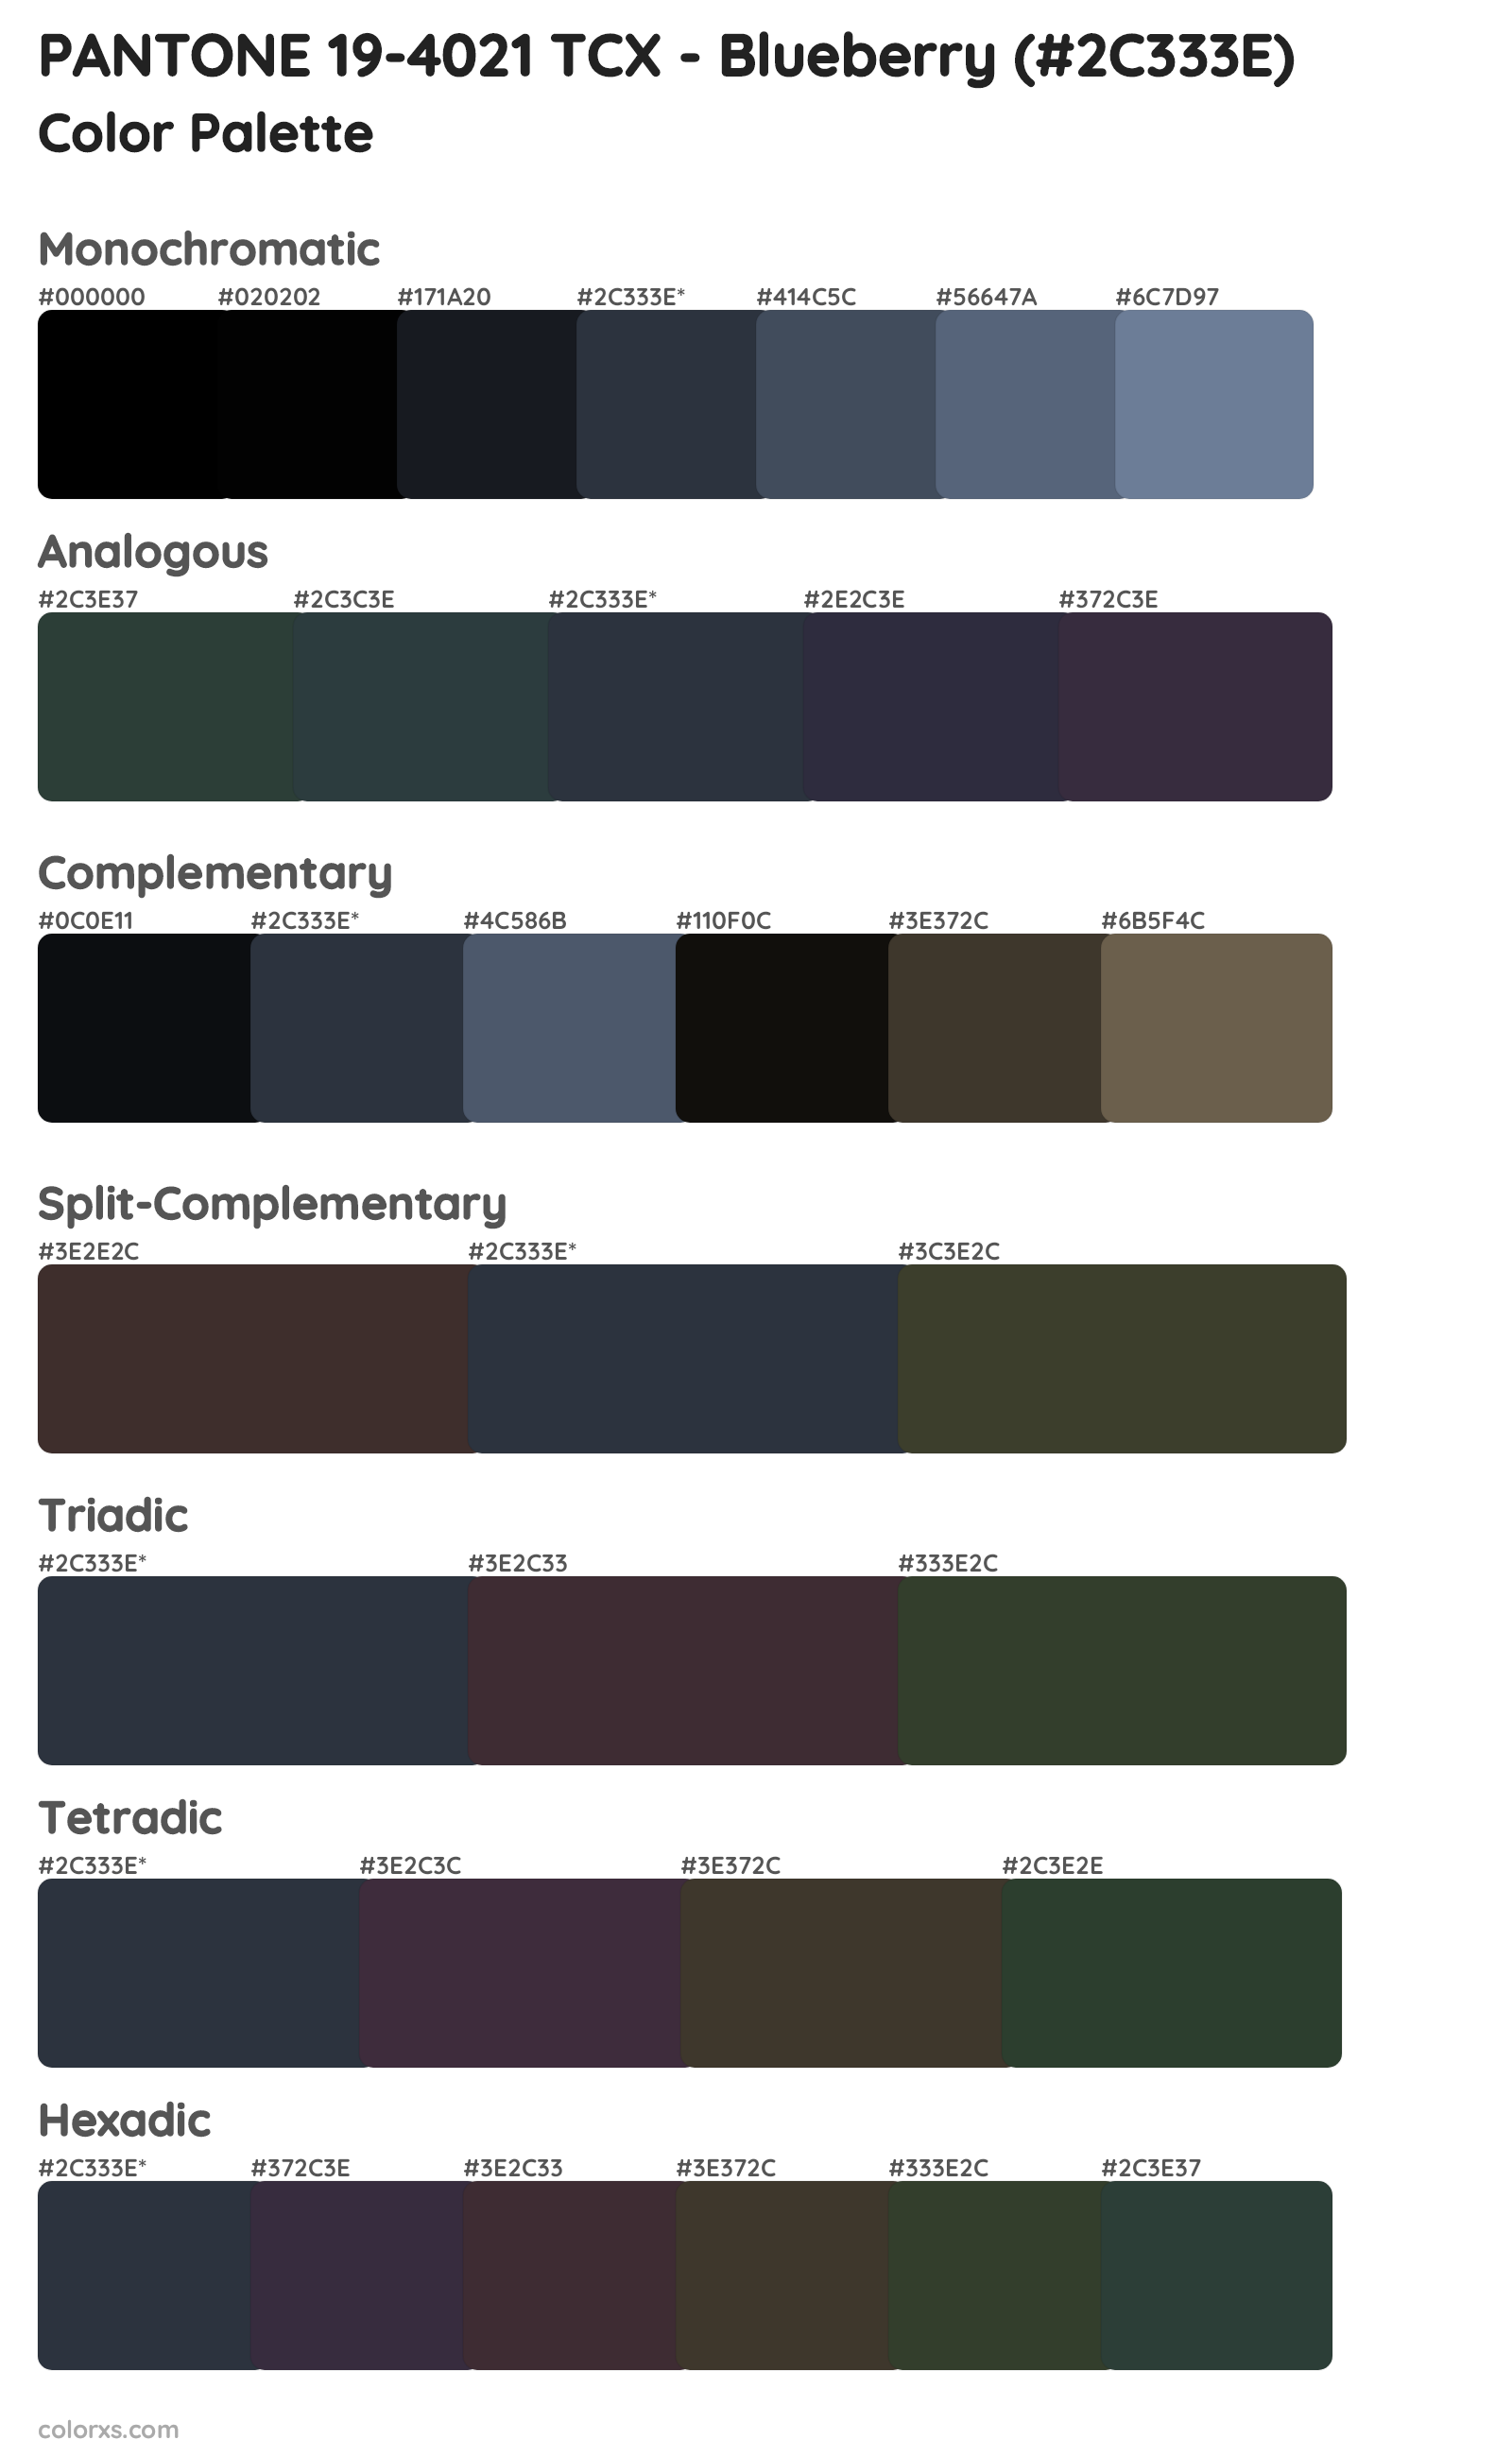 PANTONE 19-4021 TCX - Blueberry Color Scheme Palettes